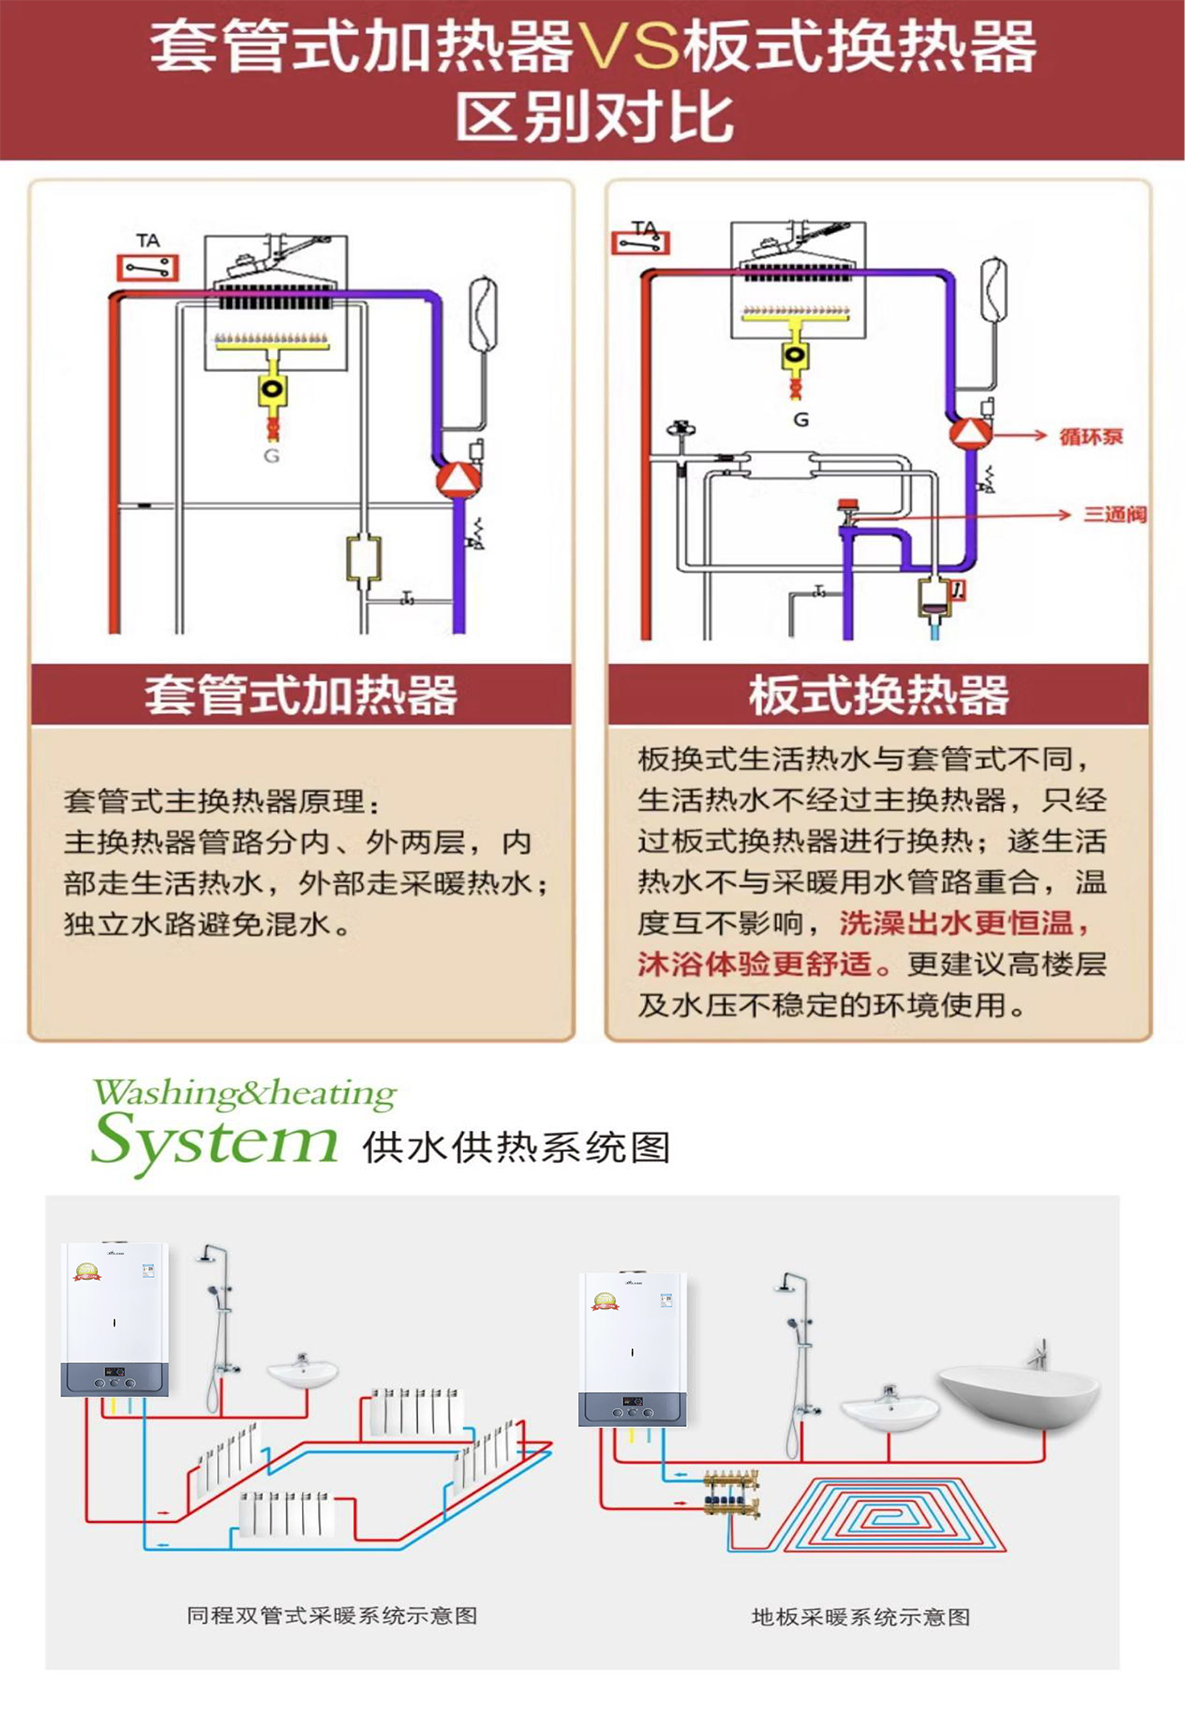 6标准Kx系列燃气采暖热水炉-2.jpg